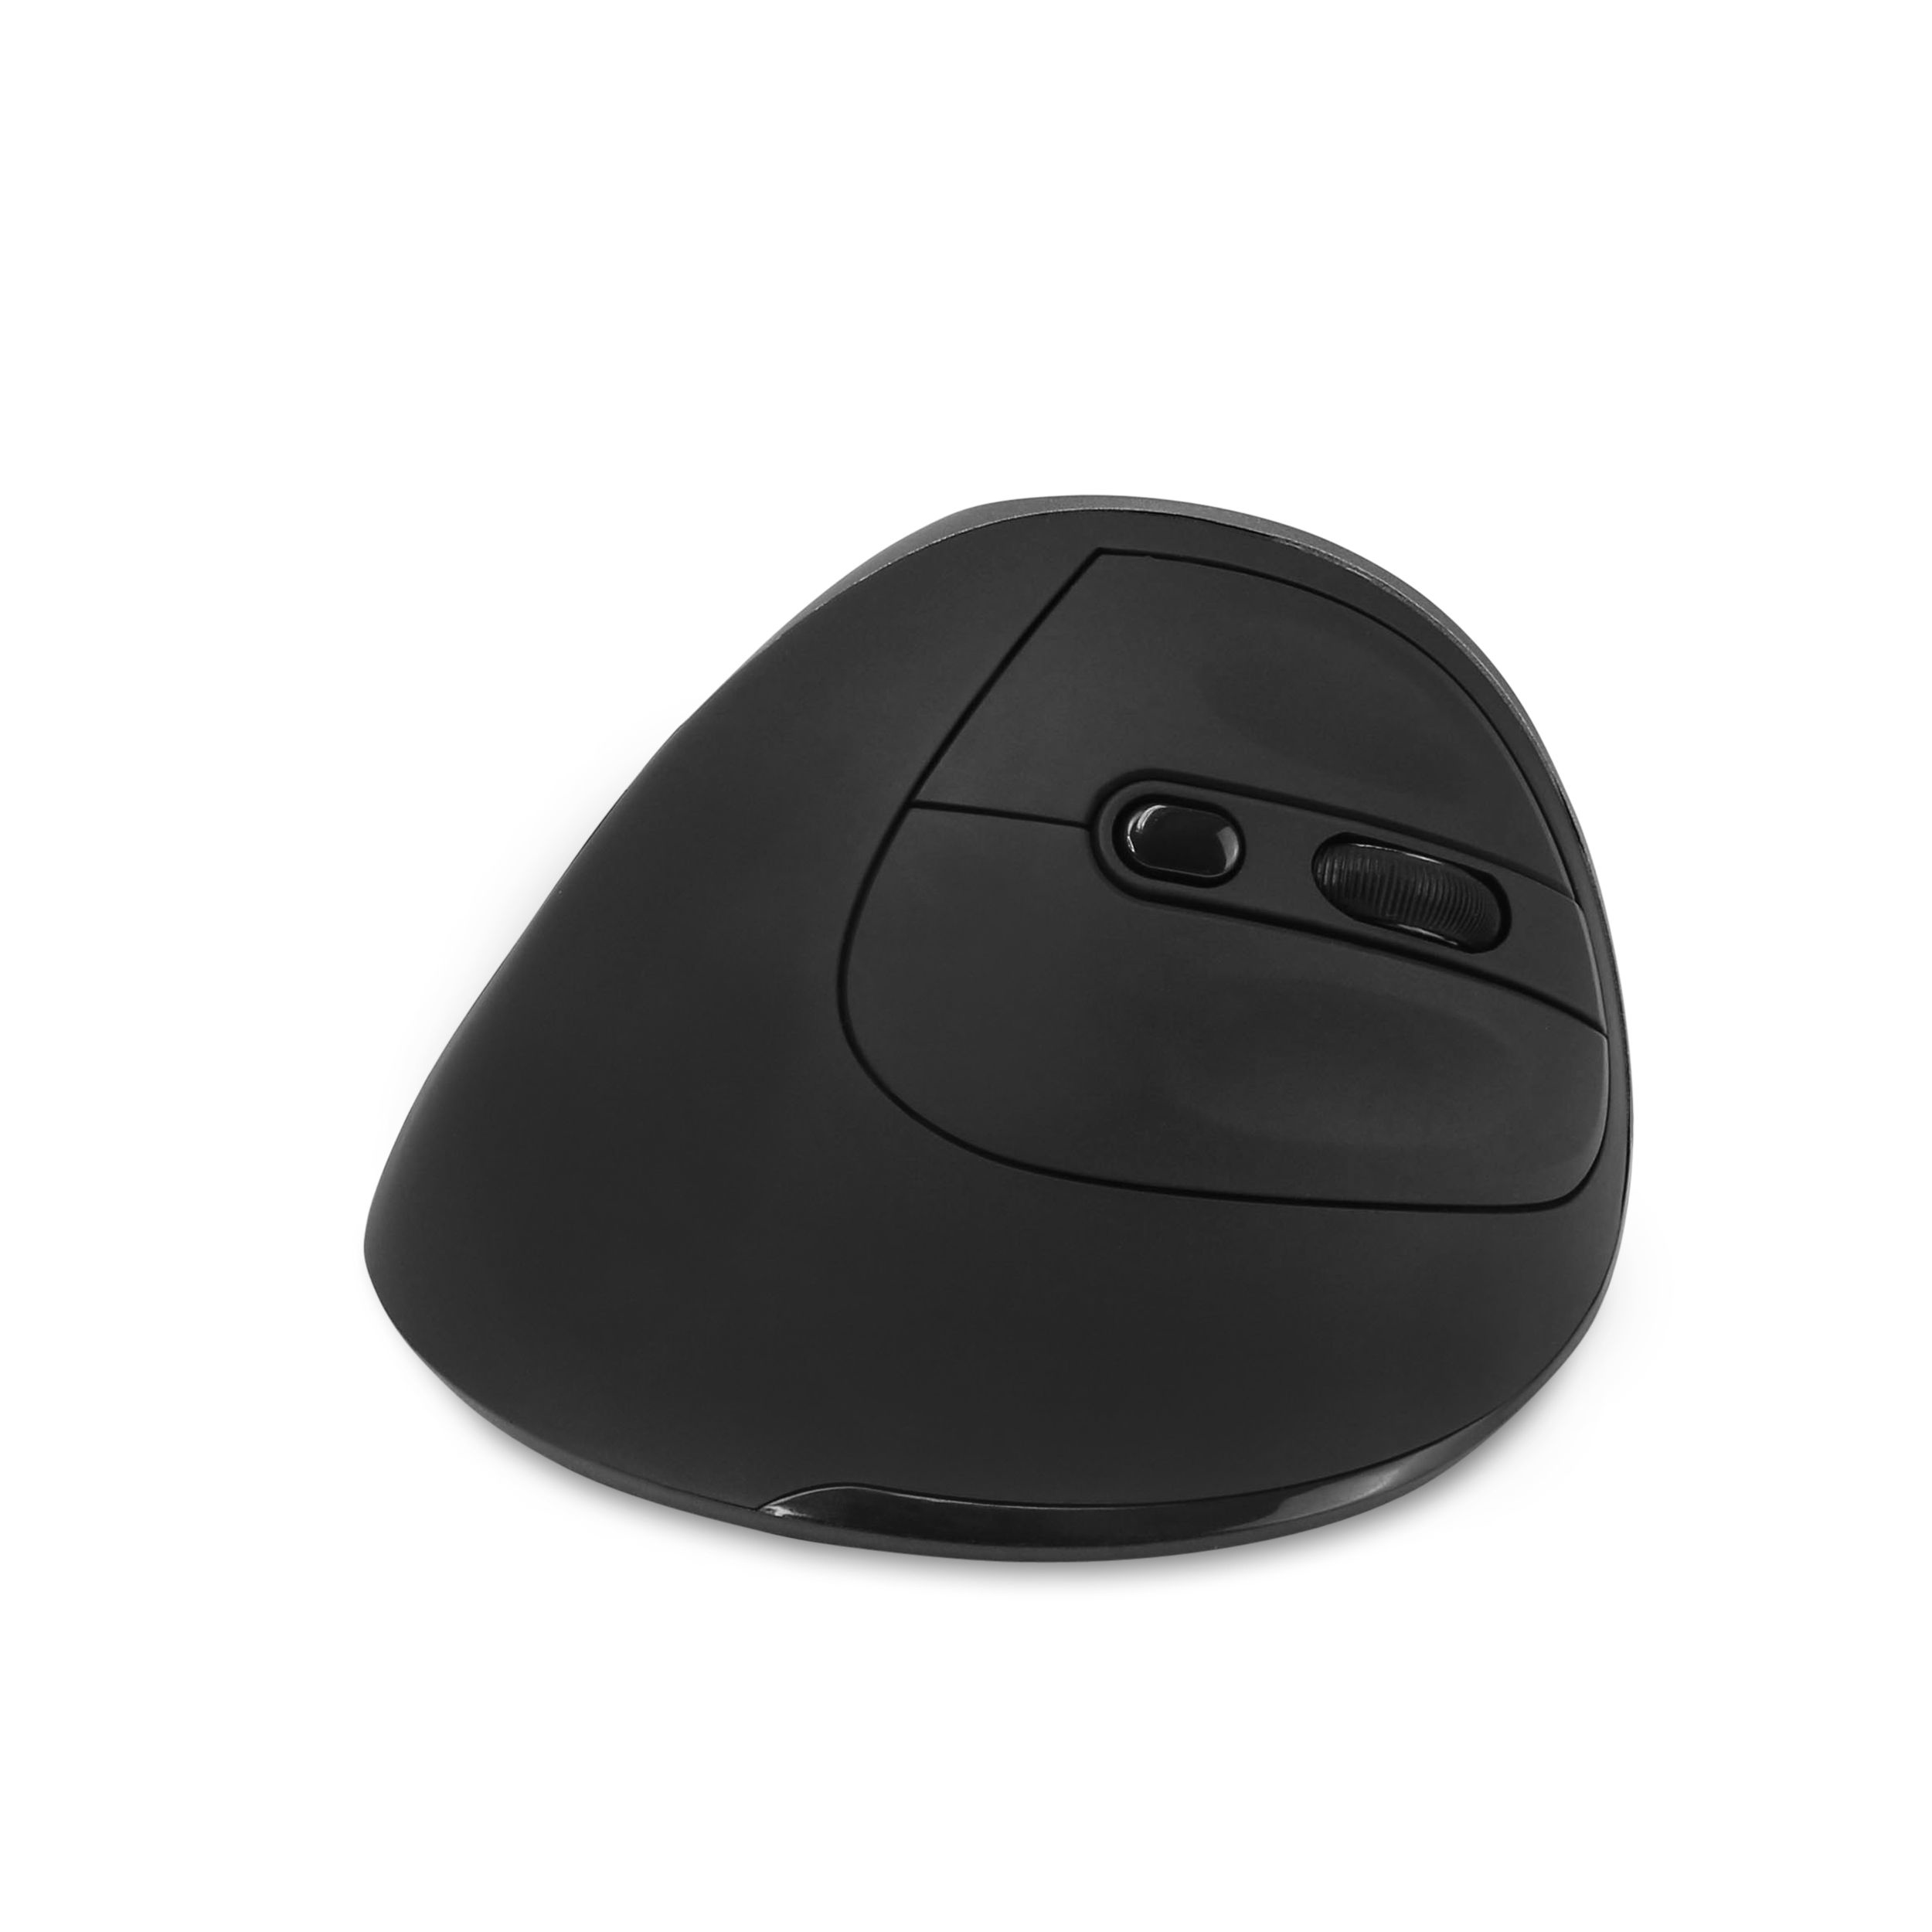 Dicota Relax - Maus - ergonomisch - Für Rechtshänder - 5 Tasten - kabellos - kabelloser Empfänger (USB)